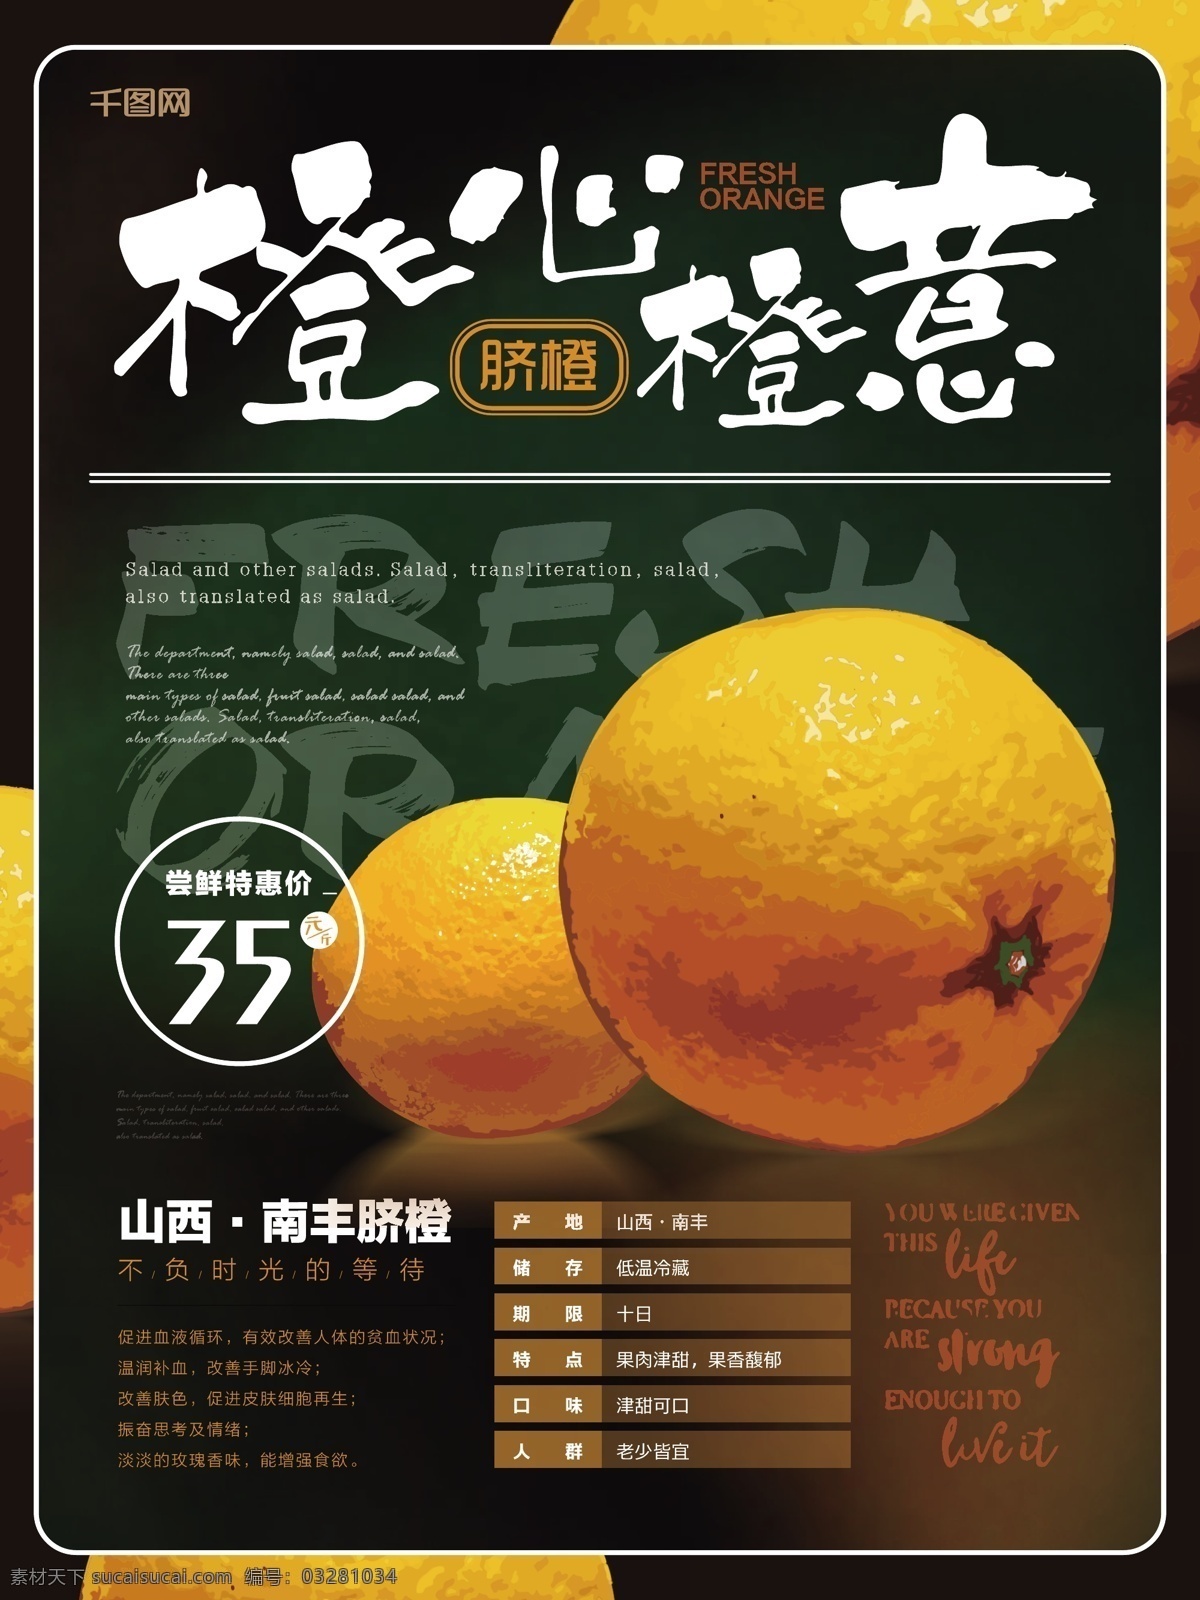 简约 清新 脐橙 水果 海报 简约风 有机食品 橙心橙意 主题 宣传